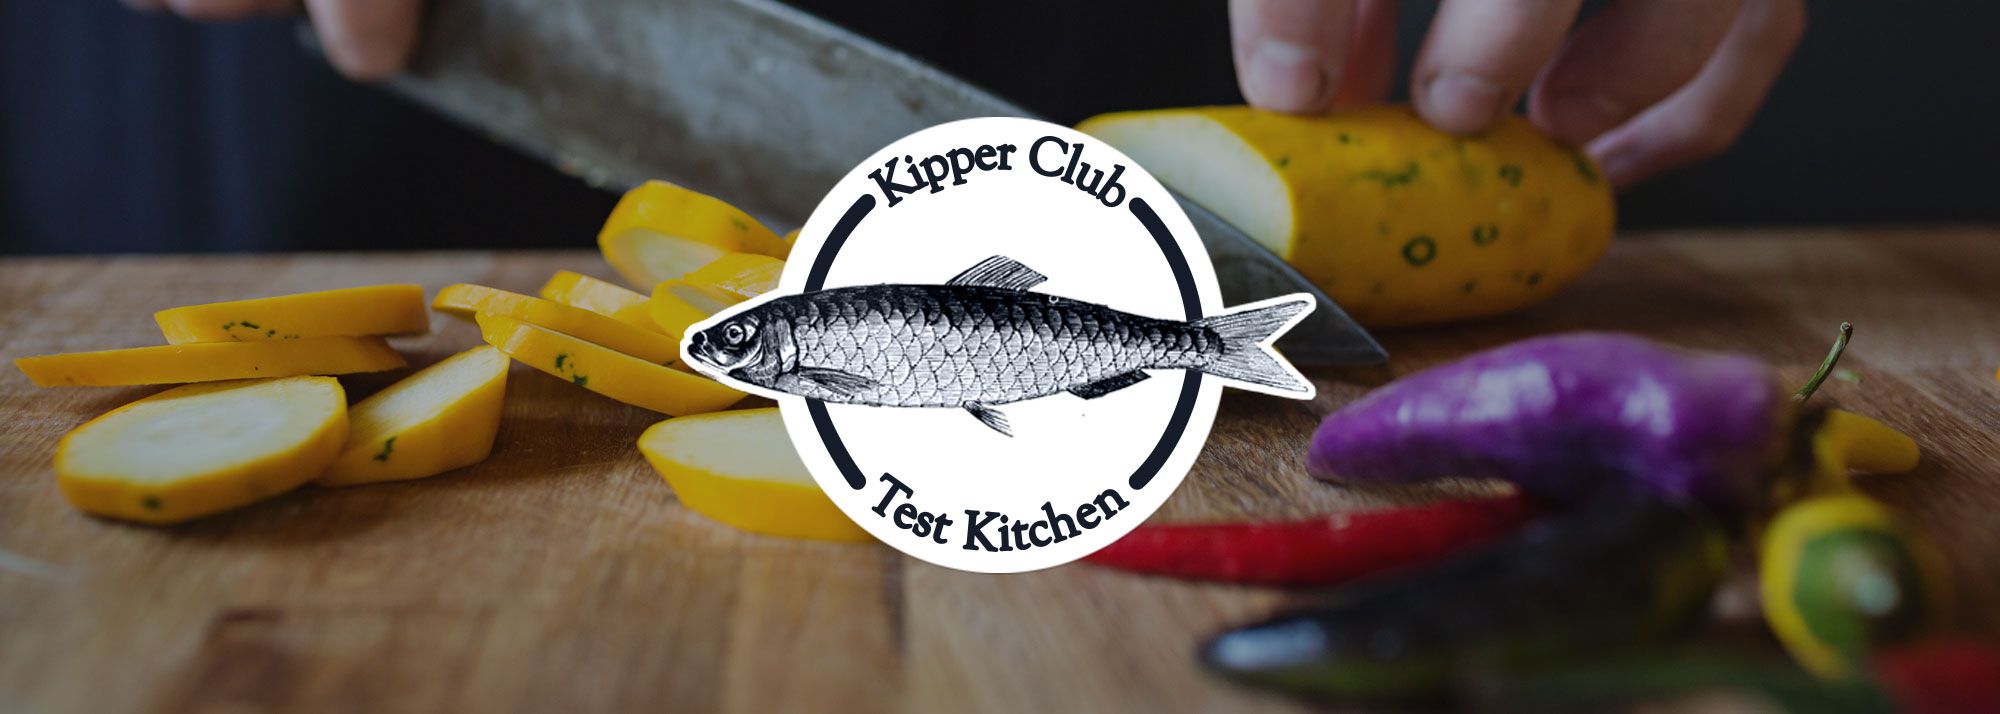 Kipper Club